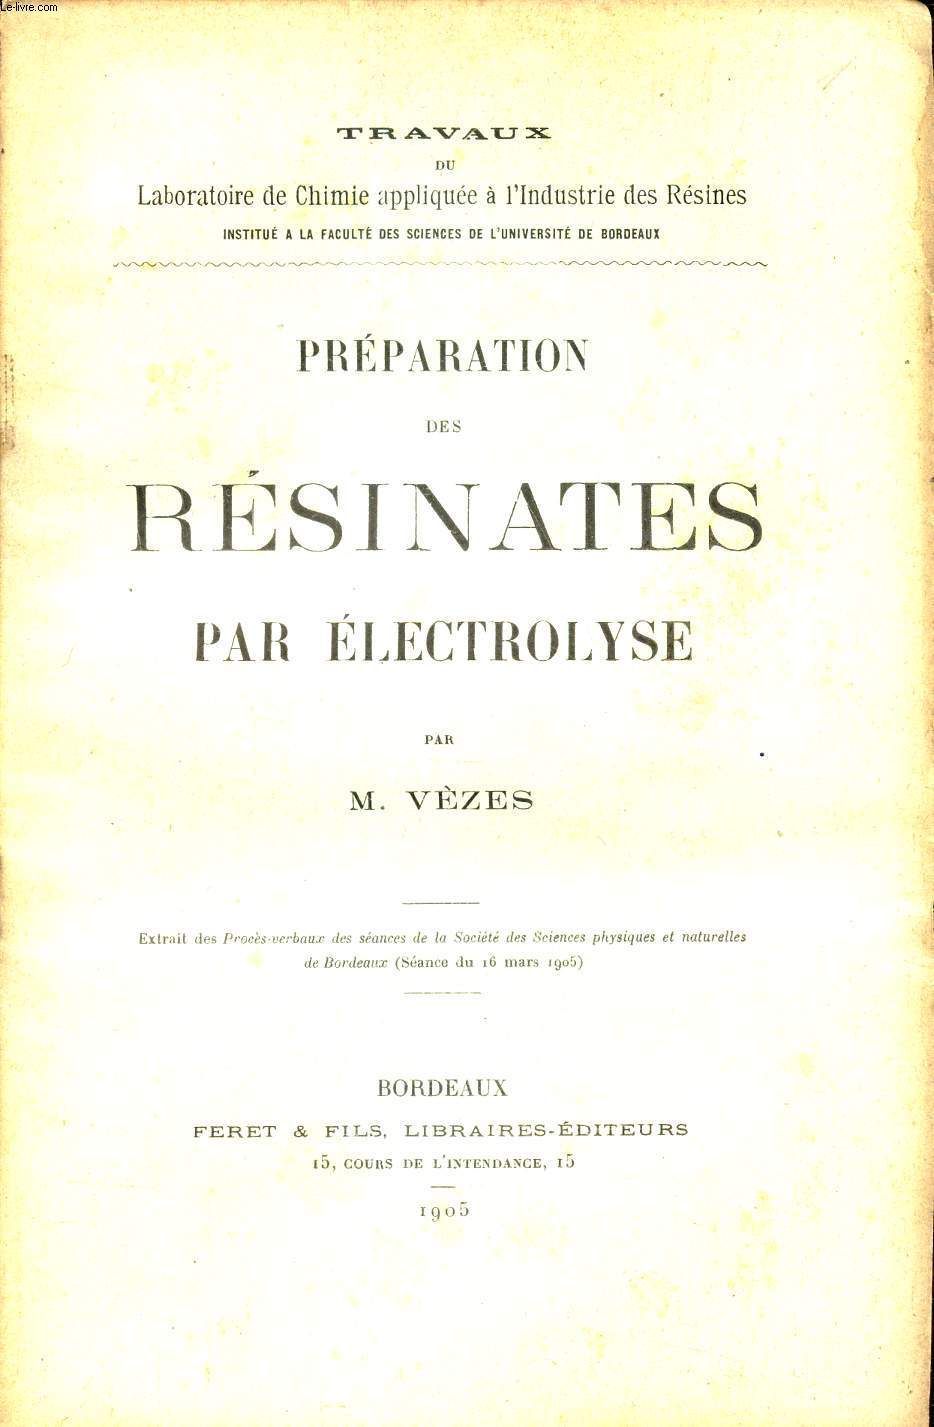 PREPARATION DES RESINATES PAR ELECTROLYSE / extrait des Procs-verbaux de la societ des Sciences physiques et naturelles de Bordeaux (sance du 16 mars 1905).